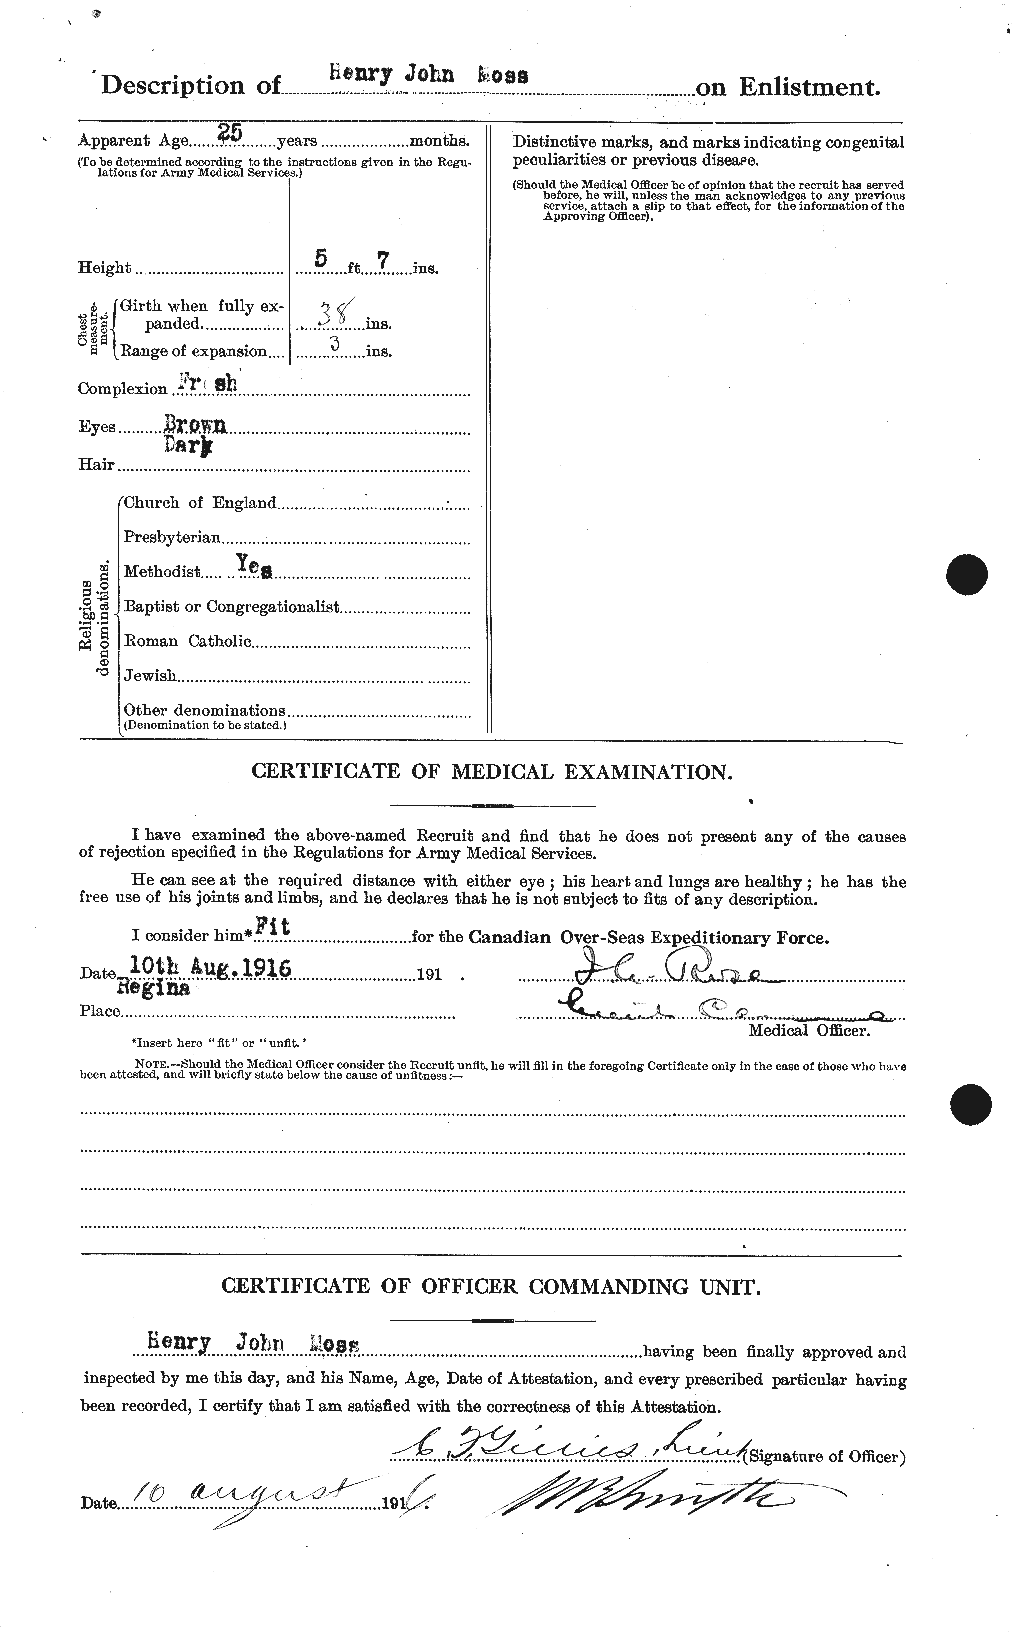 Dossiers du Personnel de la Première Guerre mondiale - CEC 512008b